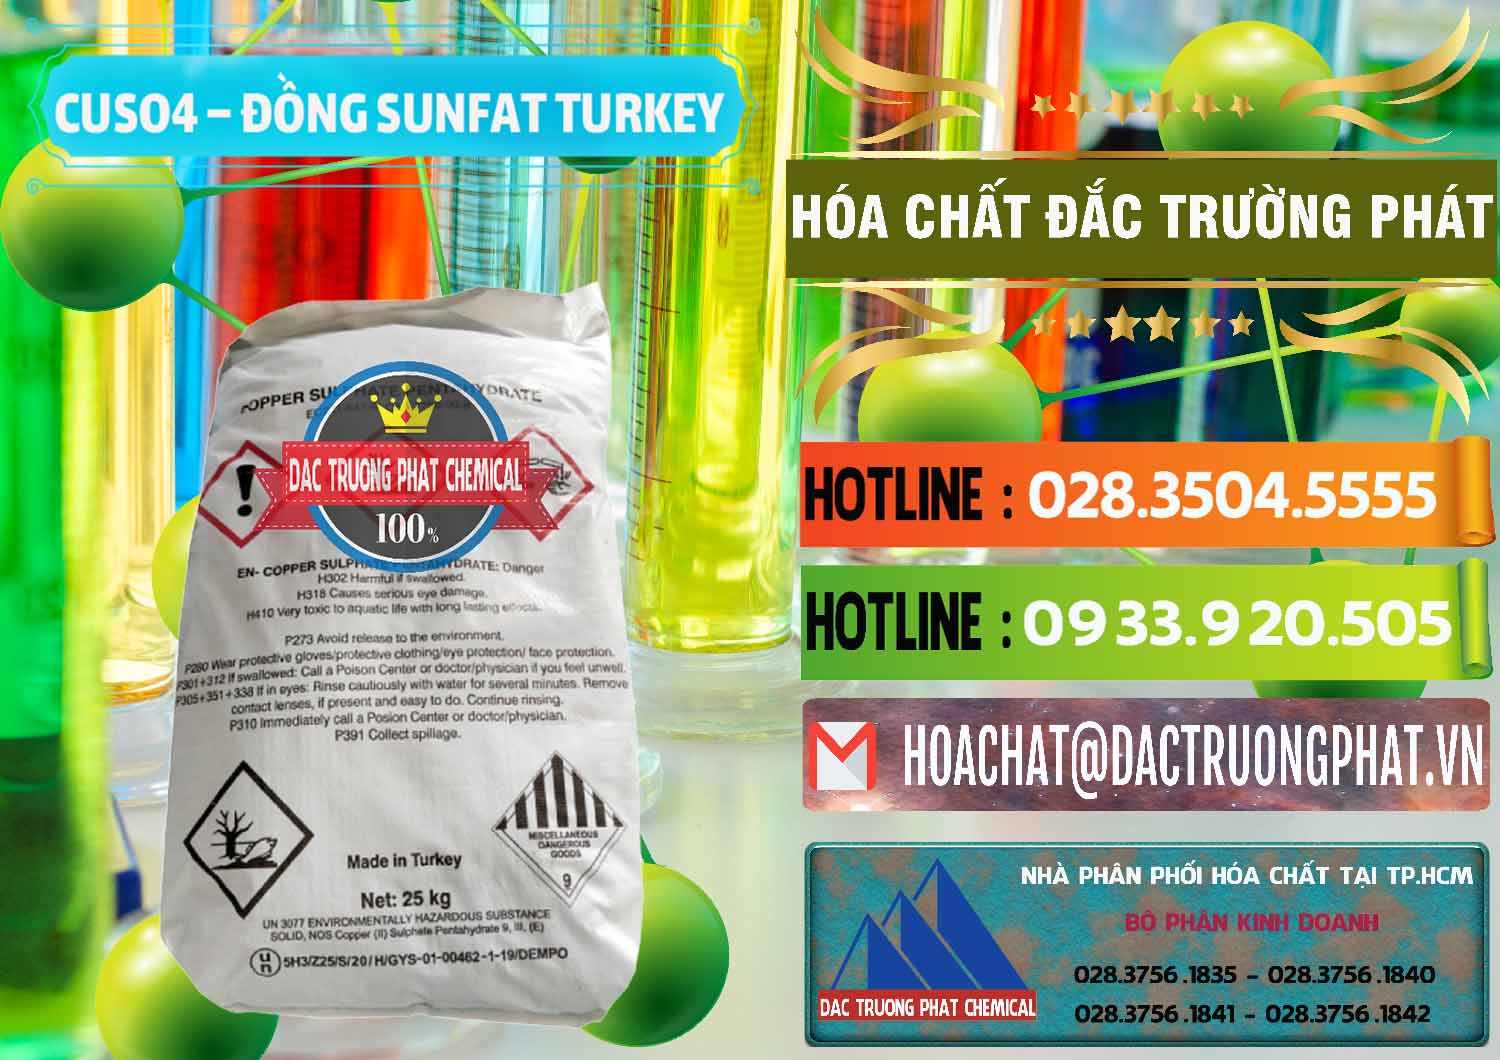 Cty chuyên kinh doanh _ bán CuSO4 – Đồng Sunfat Thổ Nhĩ Kỳ Turkey - 0481 - Đơn vị phân phối - bán hóa chất tại TP.HCM - cungcaphoachat.com.vn